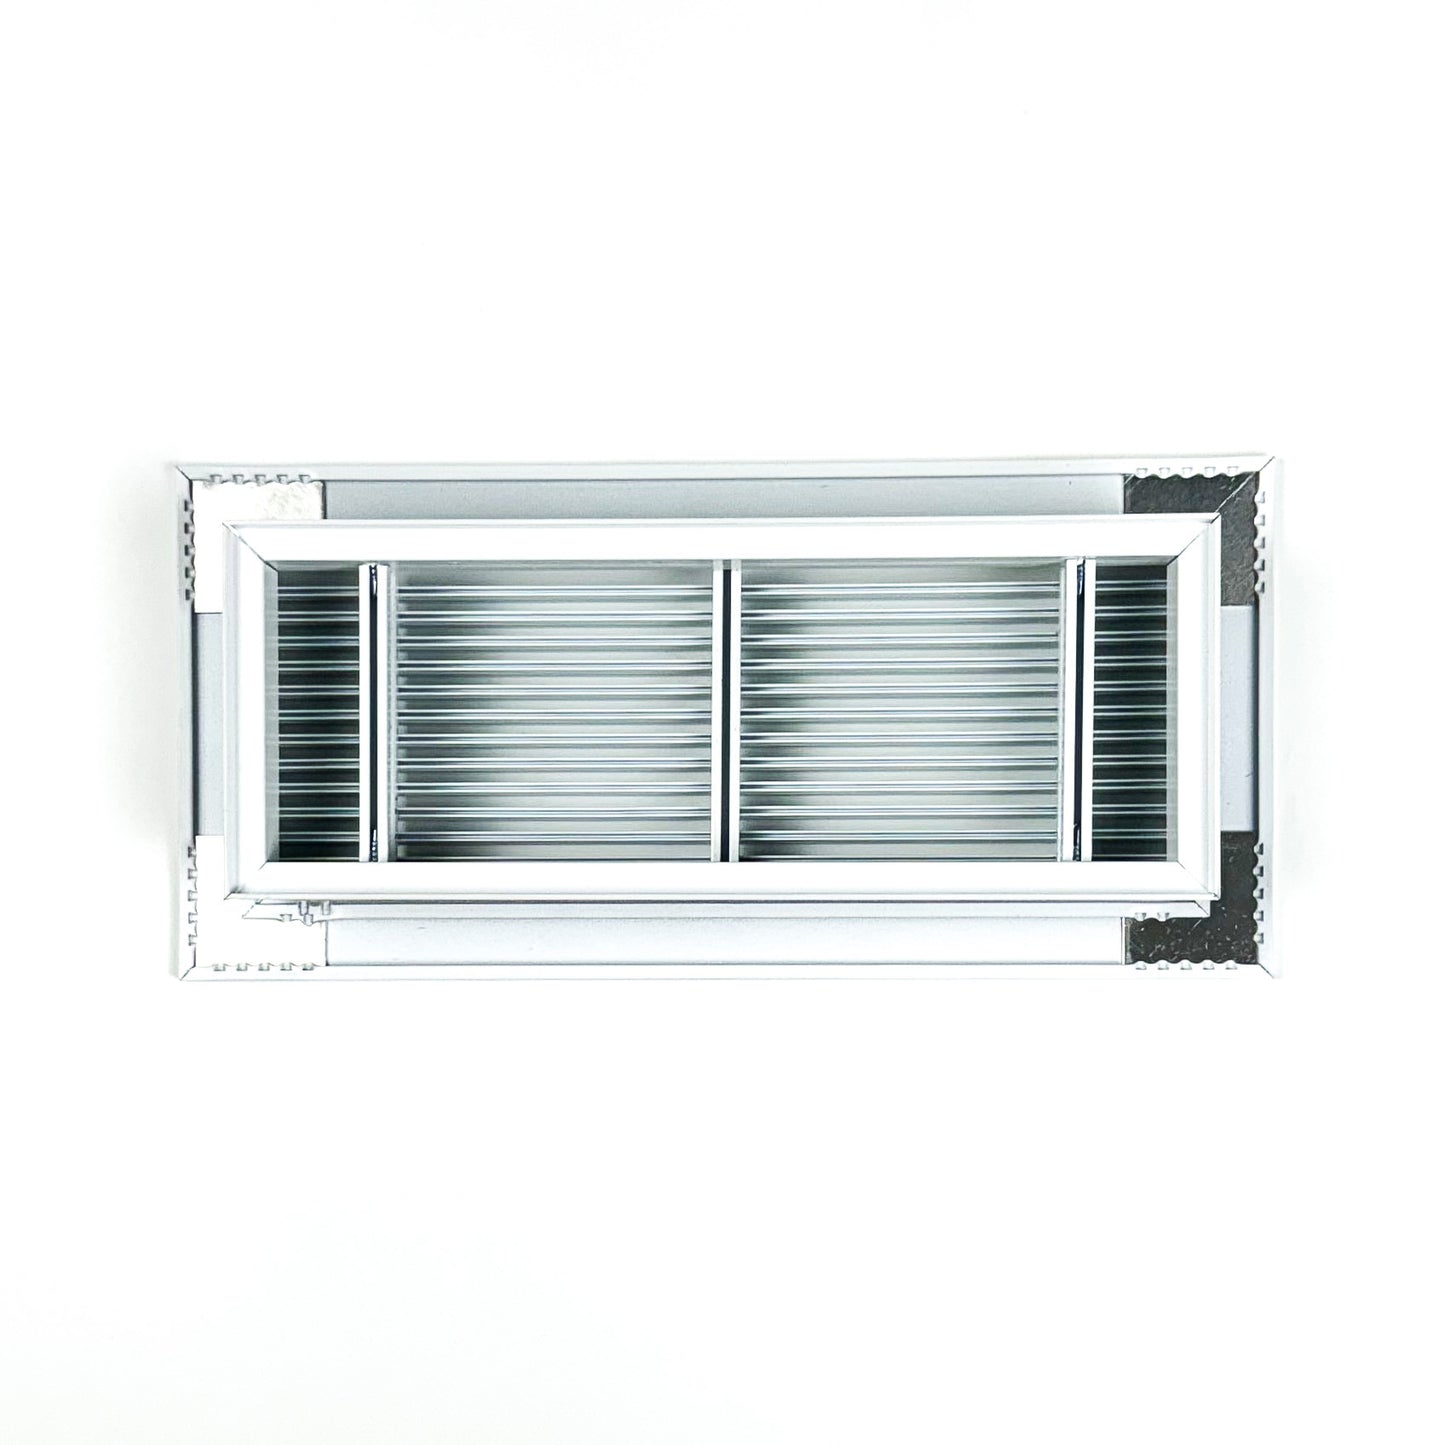 Grille de ventilation de plancher de haute qualité - Aluminium extrudé - Grillage horizontal - 2